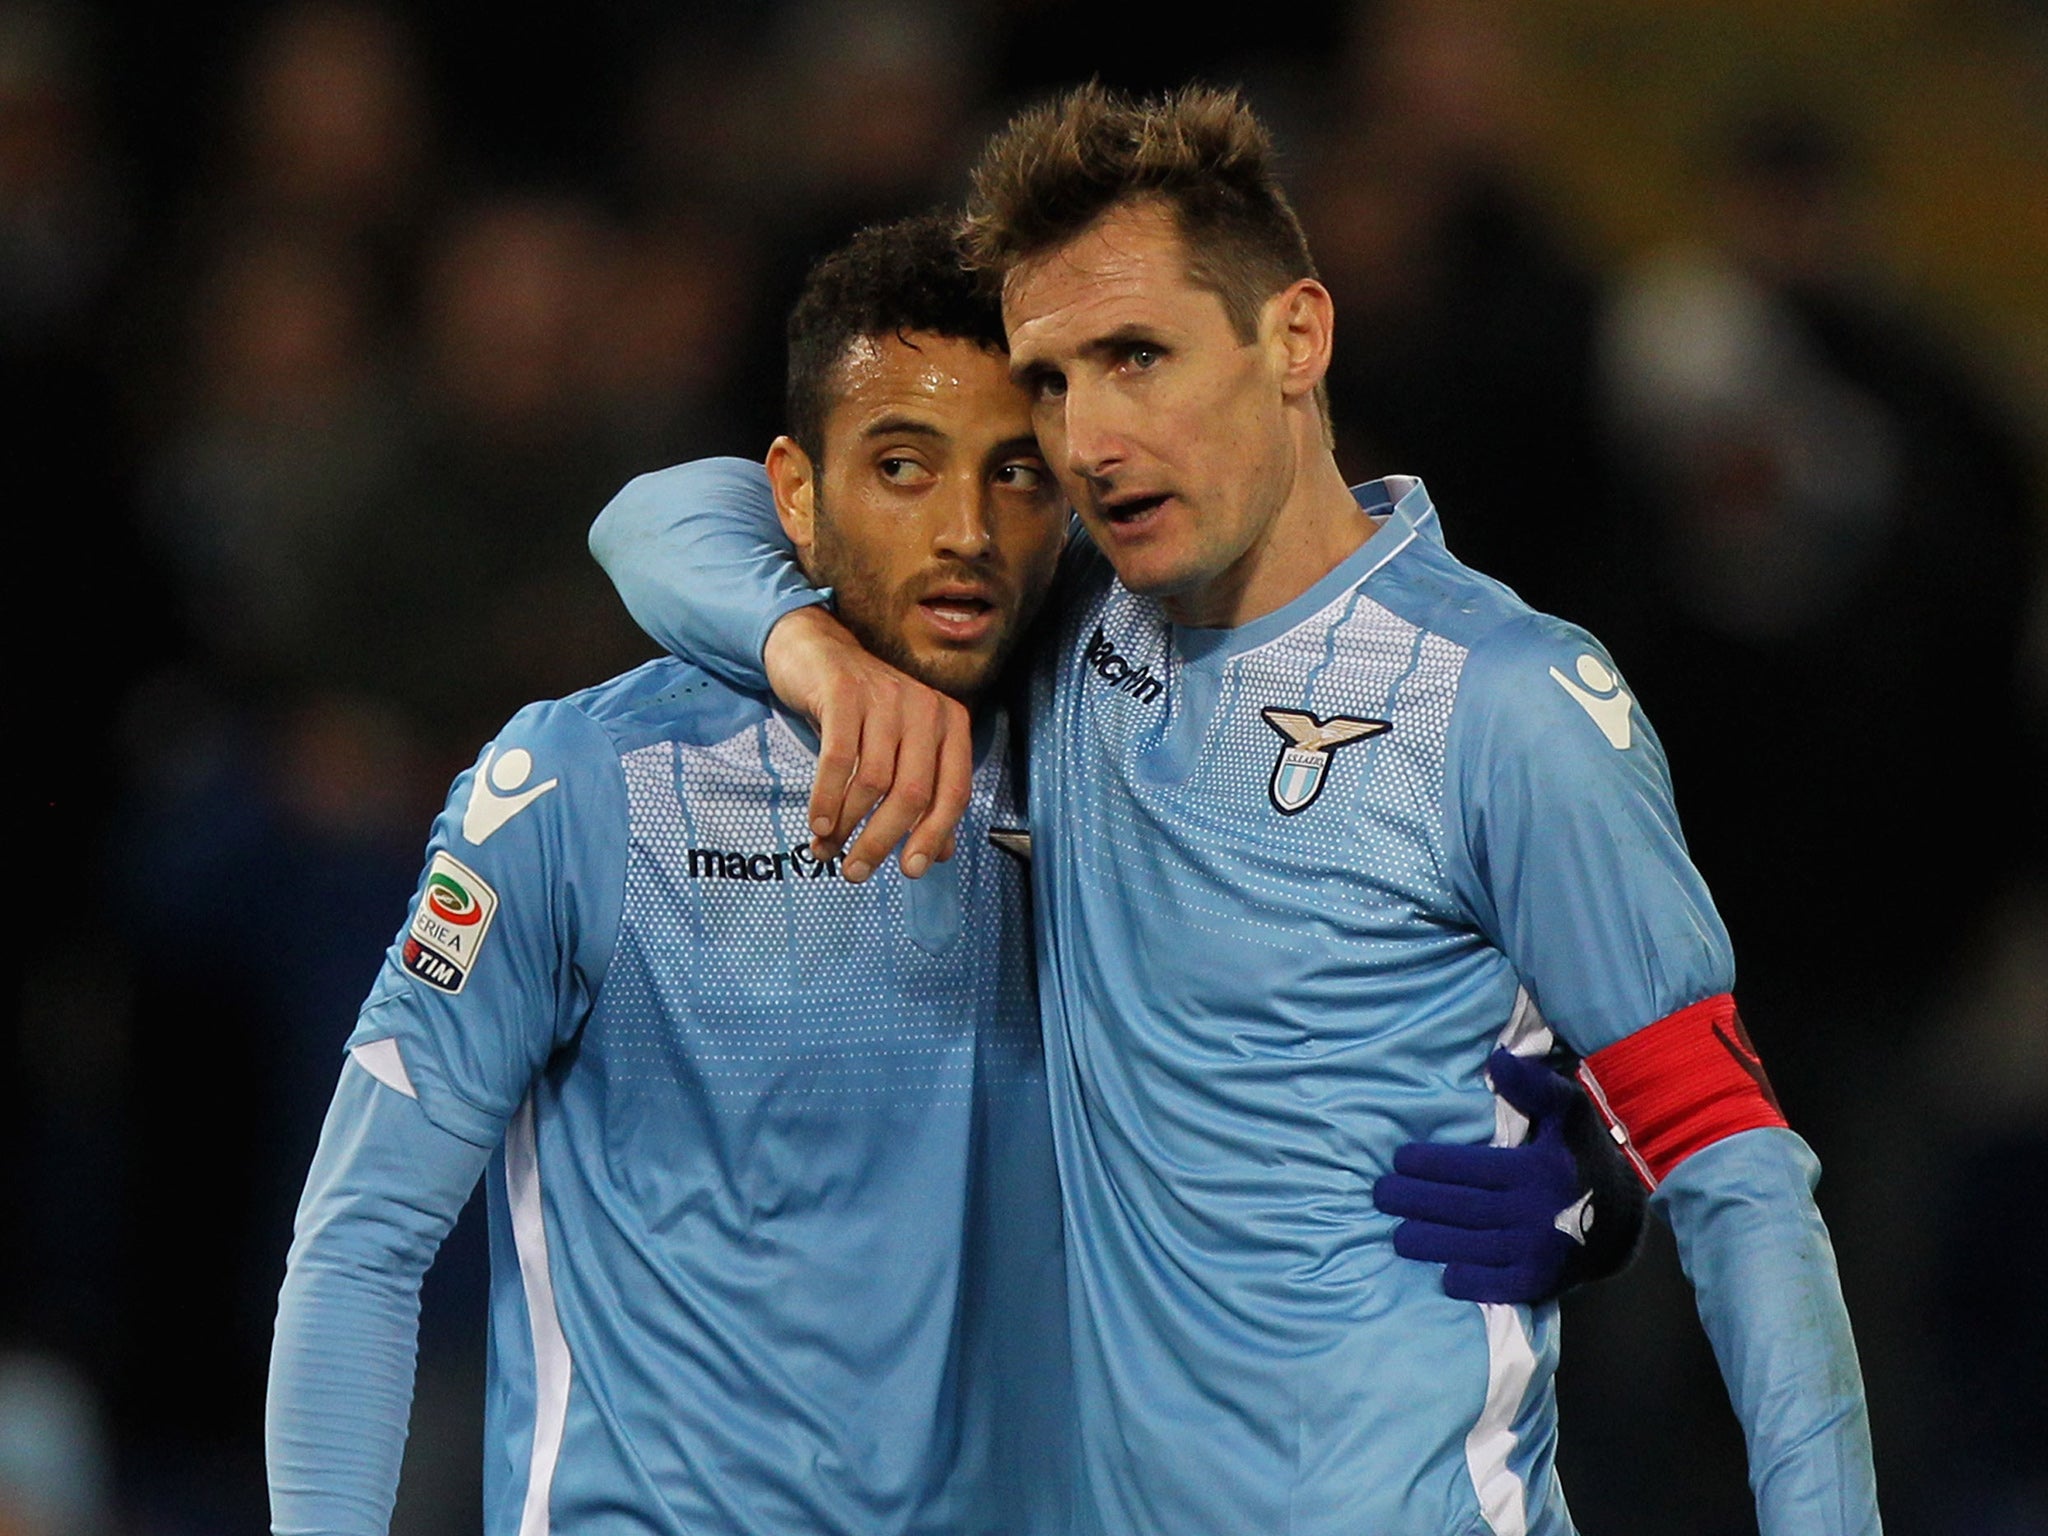 Felipe Anderson and Miroslav Klose celebrate during Lazio's win over Atalanta